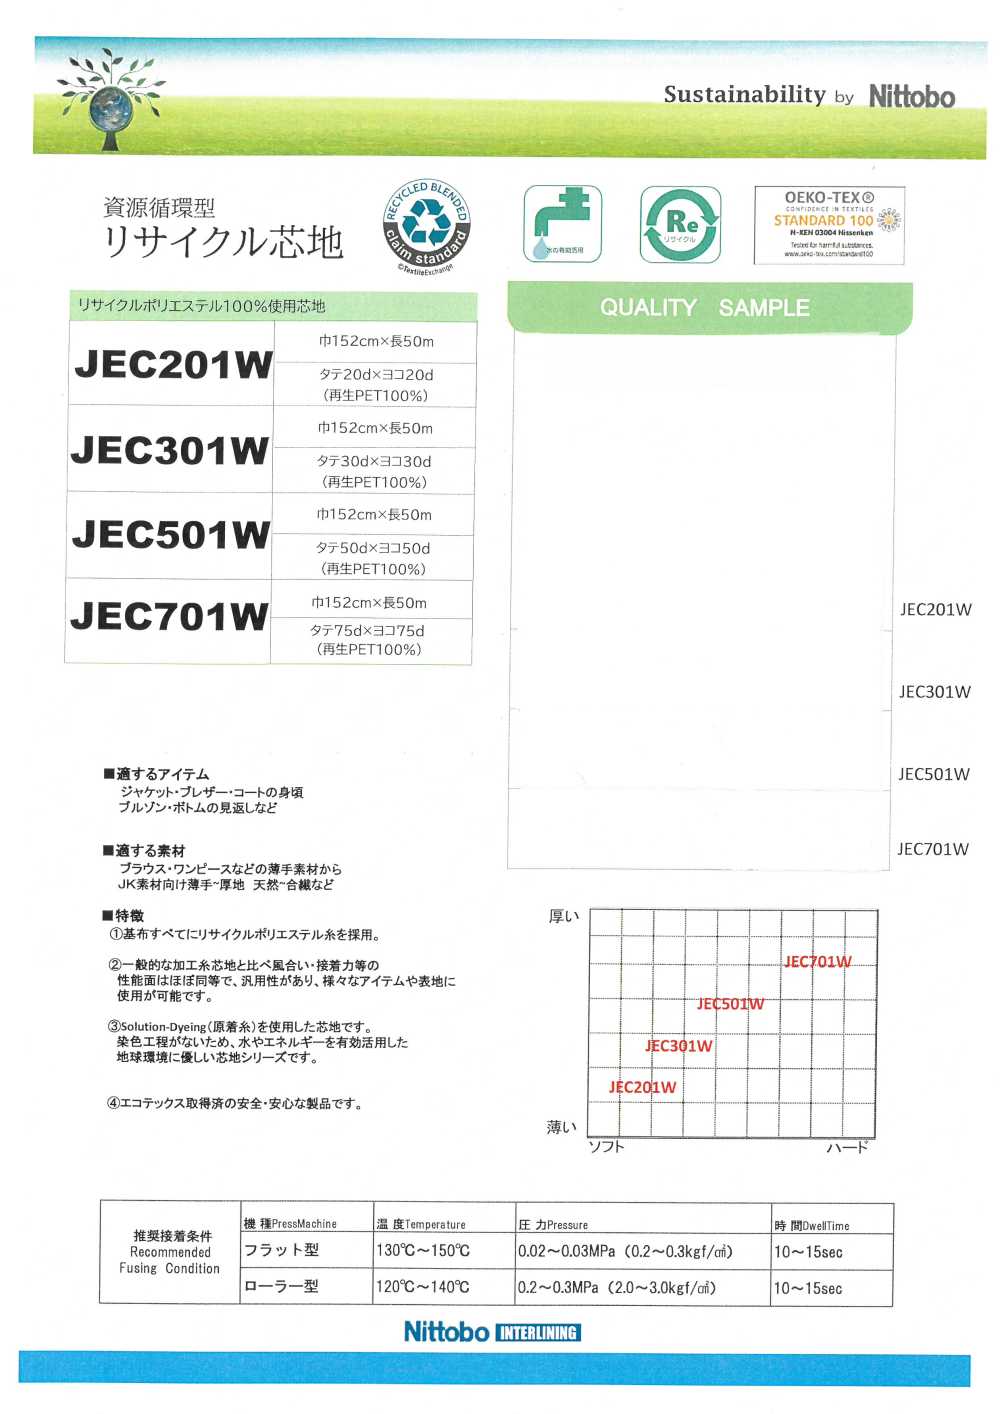 JEC201W Materiales Reciclados Finos, Versátiles Y Suaves Entretela 20D Utilizados Nittobo